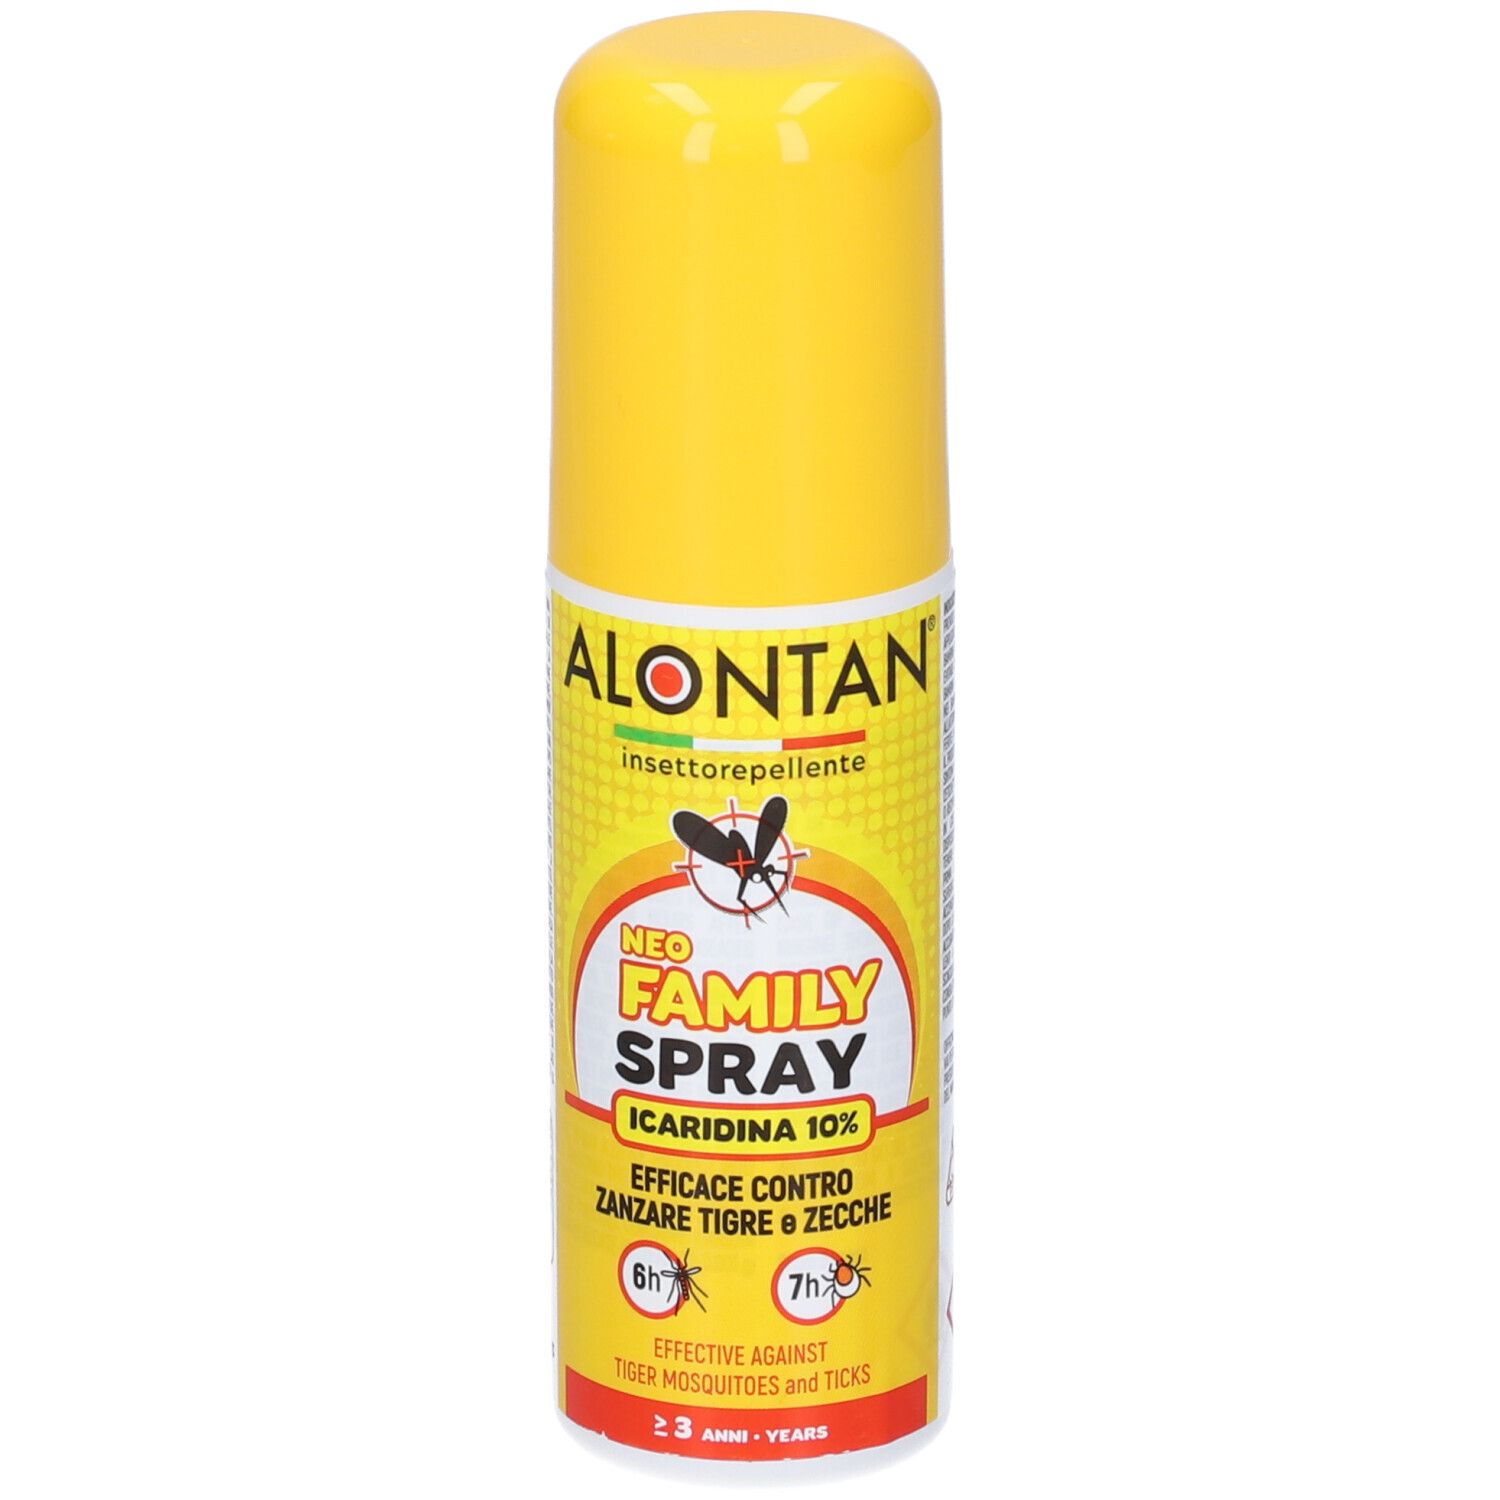 Alontan® Neo Family Spray